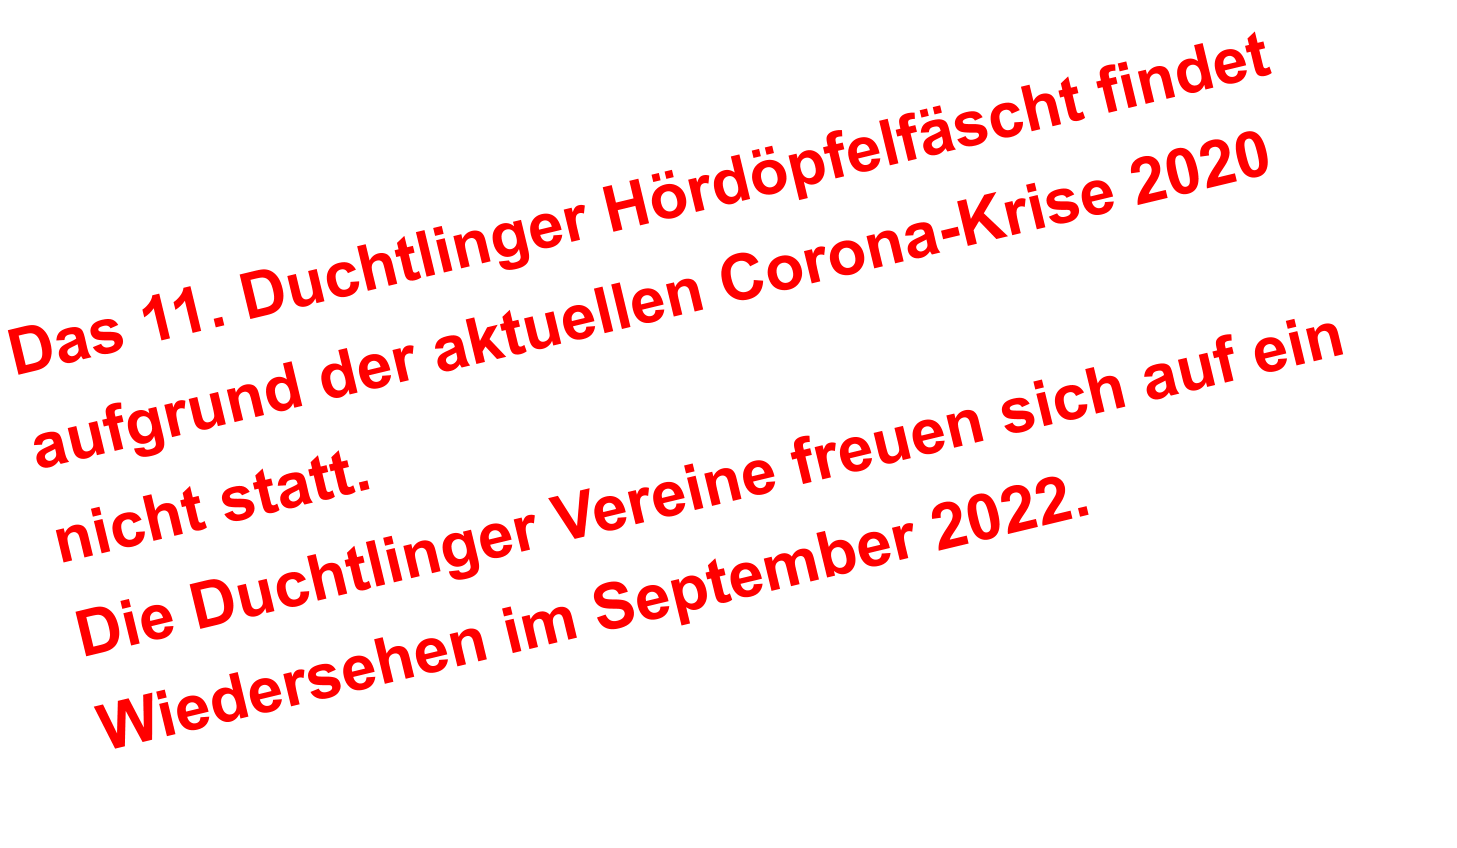 Das 11. Duchtlinger Hördöpfelfäscht findet aufgrund der aktuellen Corona-Krise 2020 nicht statt.  Die Duchtlinger Vereine freuen sich auf ein Wiedersehen im September 2022.